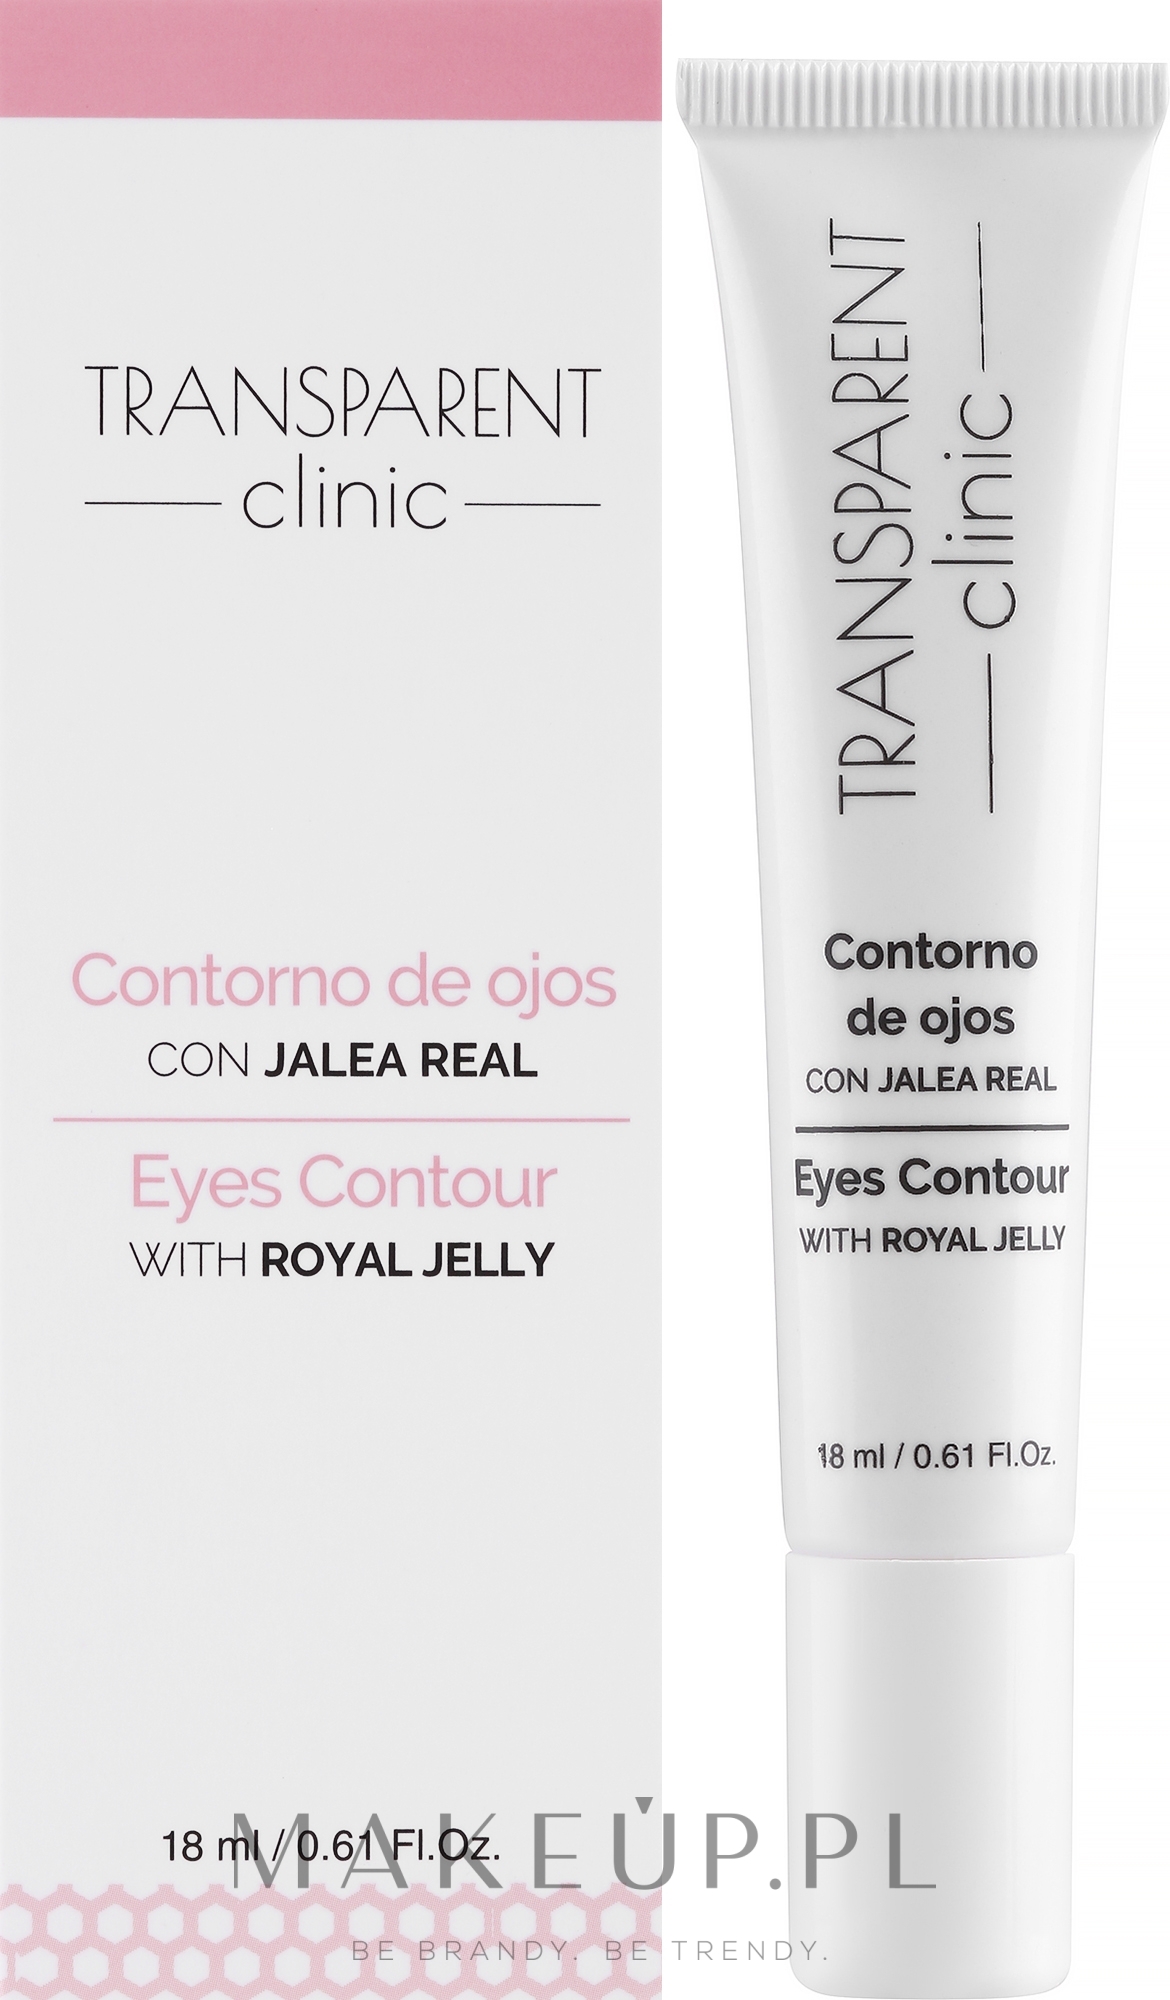 Krem na kontur oczu z mleczkiem pszczelim - Transparent Clinic Eye Contour Cream — Zdjęcie 18 ml